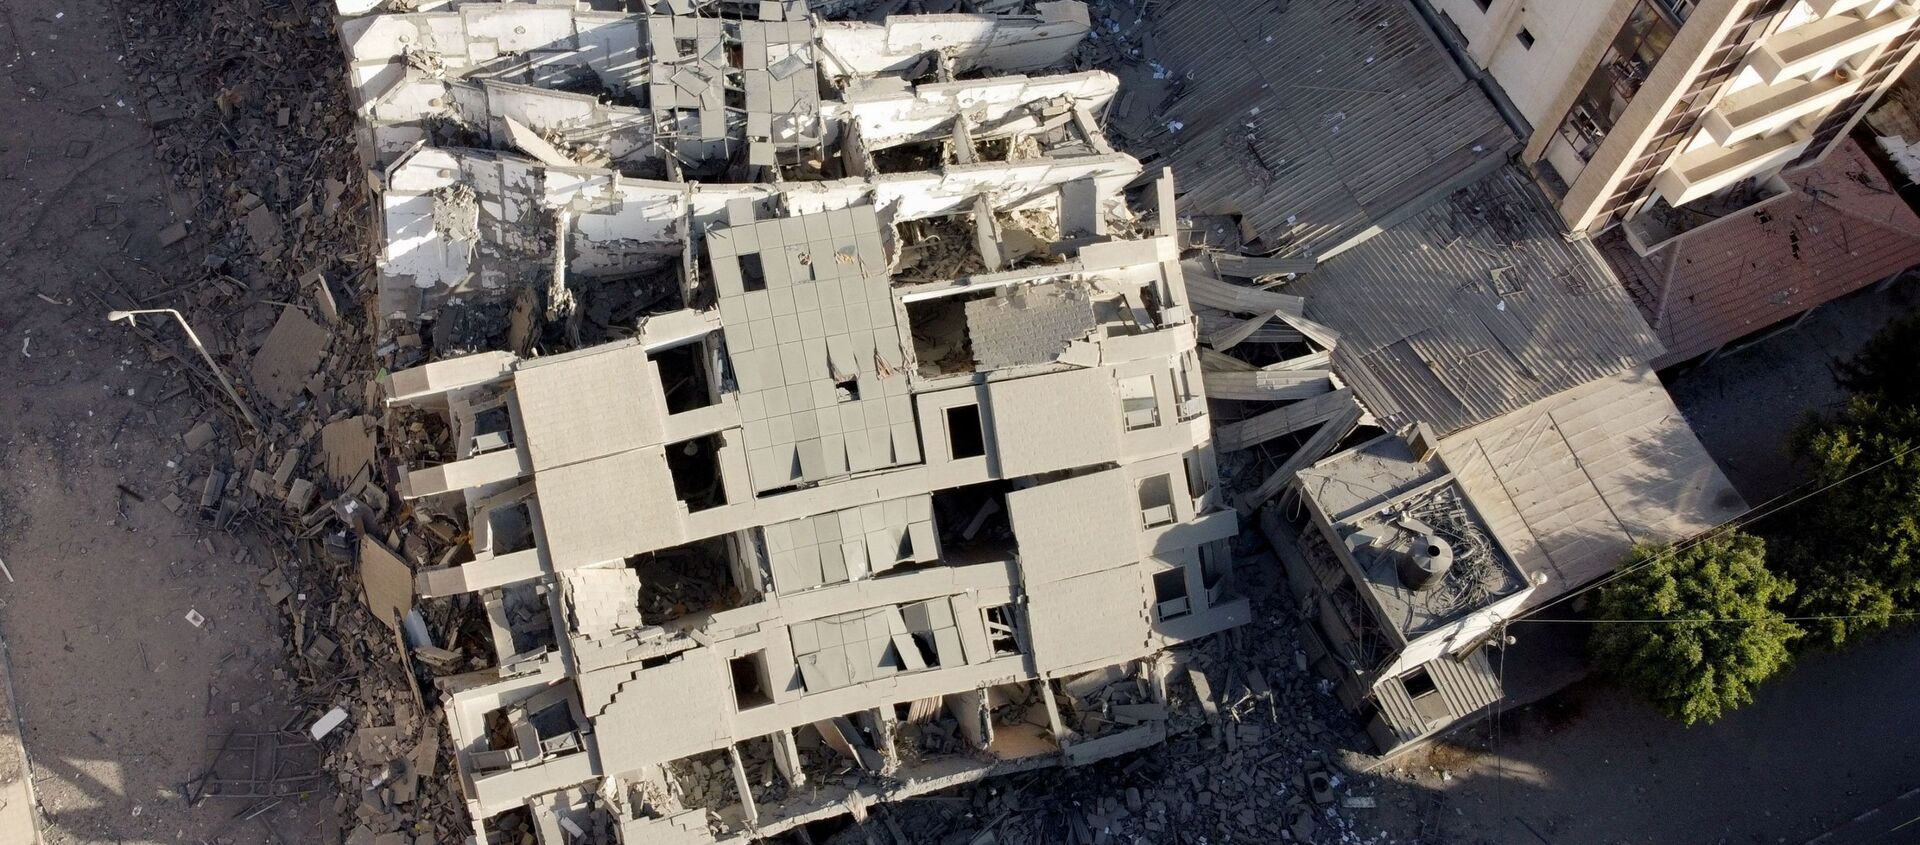 На снимке, сделанном с помощью беспилотника, видны руины здания, разрушенного в результате израильских воздушных ударов, на фоне вспышки израильско-палестинского конфликта в городе Газа - Sputnik Грузия, 1920, 17.05.2021